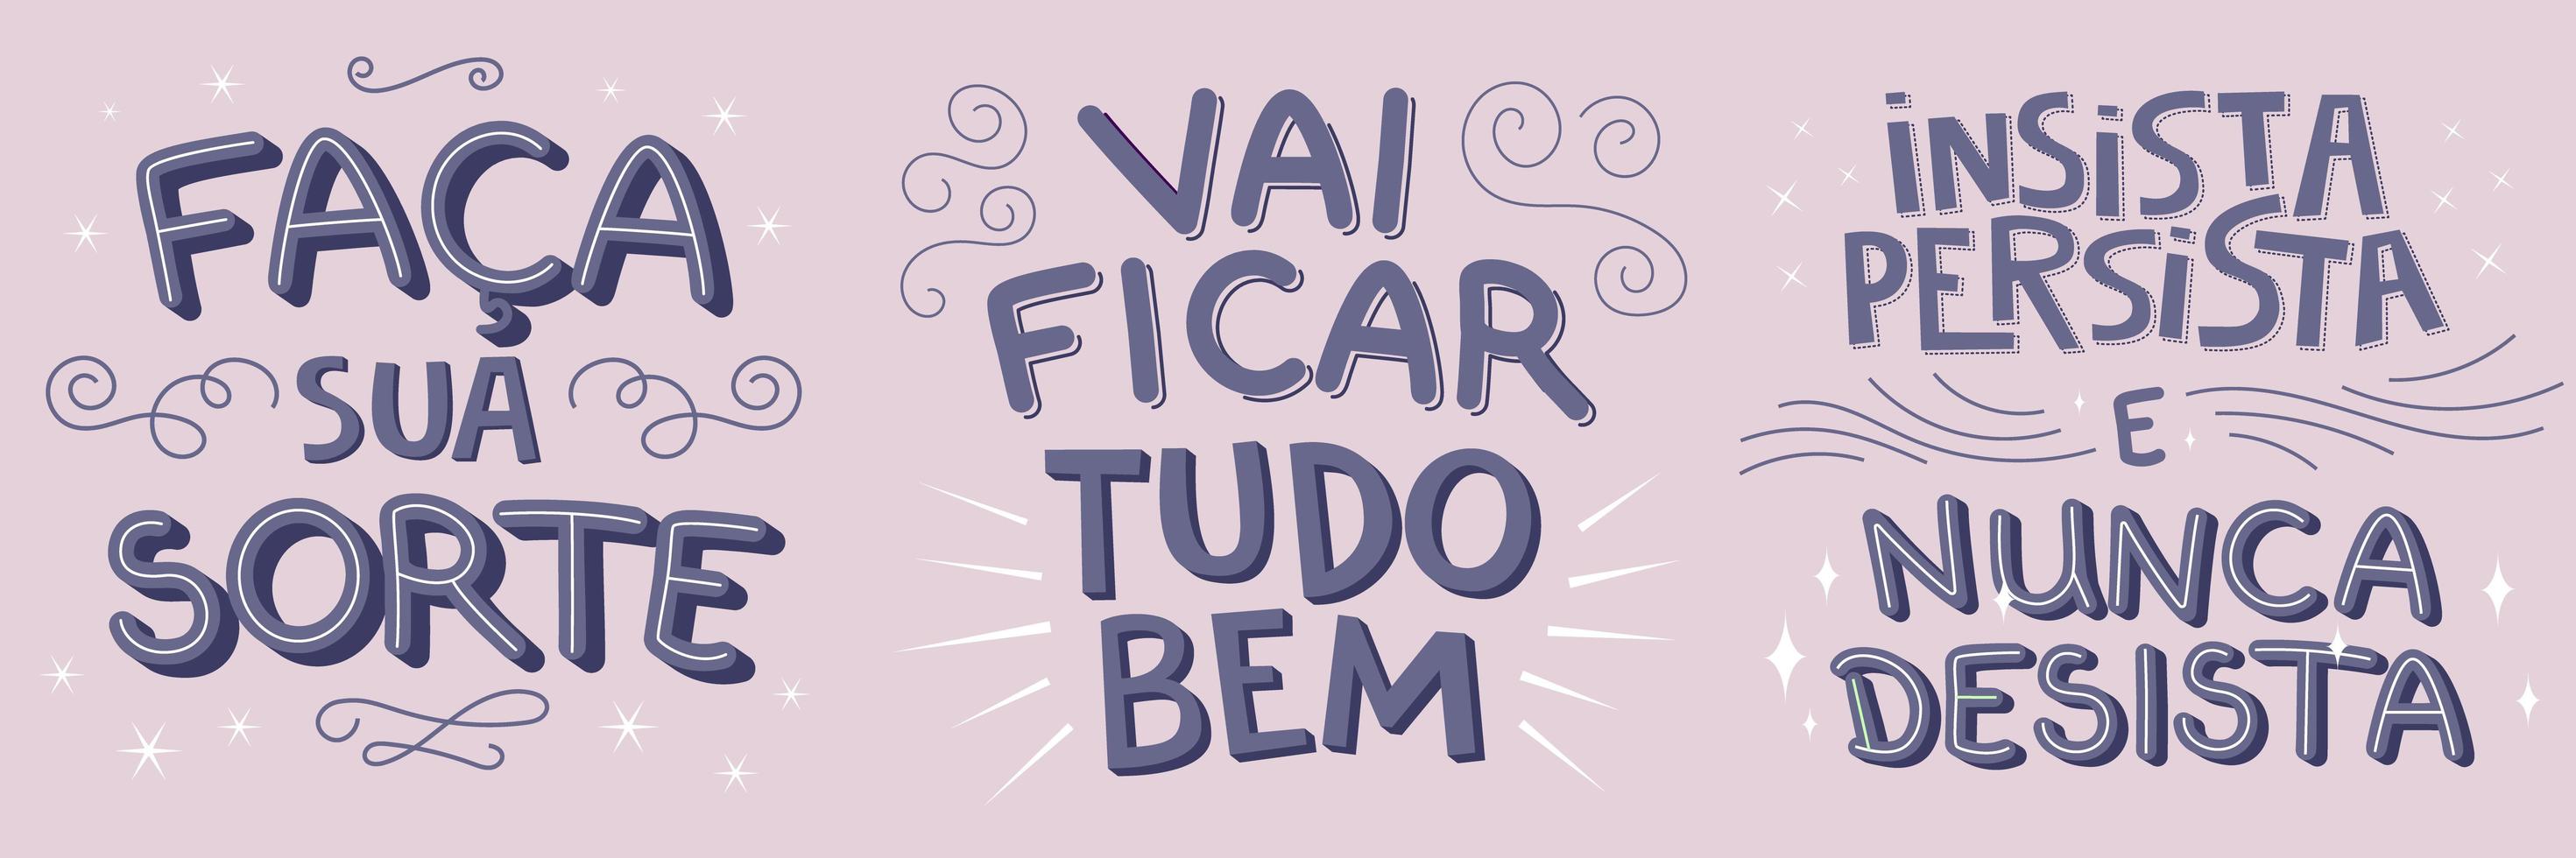 drei motivierende Illustration in brasilianischem Portugiesisch. Übersetzung - mach dein Glück - es wird gut - beharre, beharre und gib niemals auf. vektor